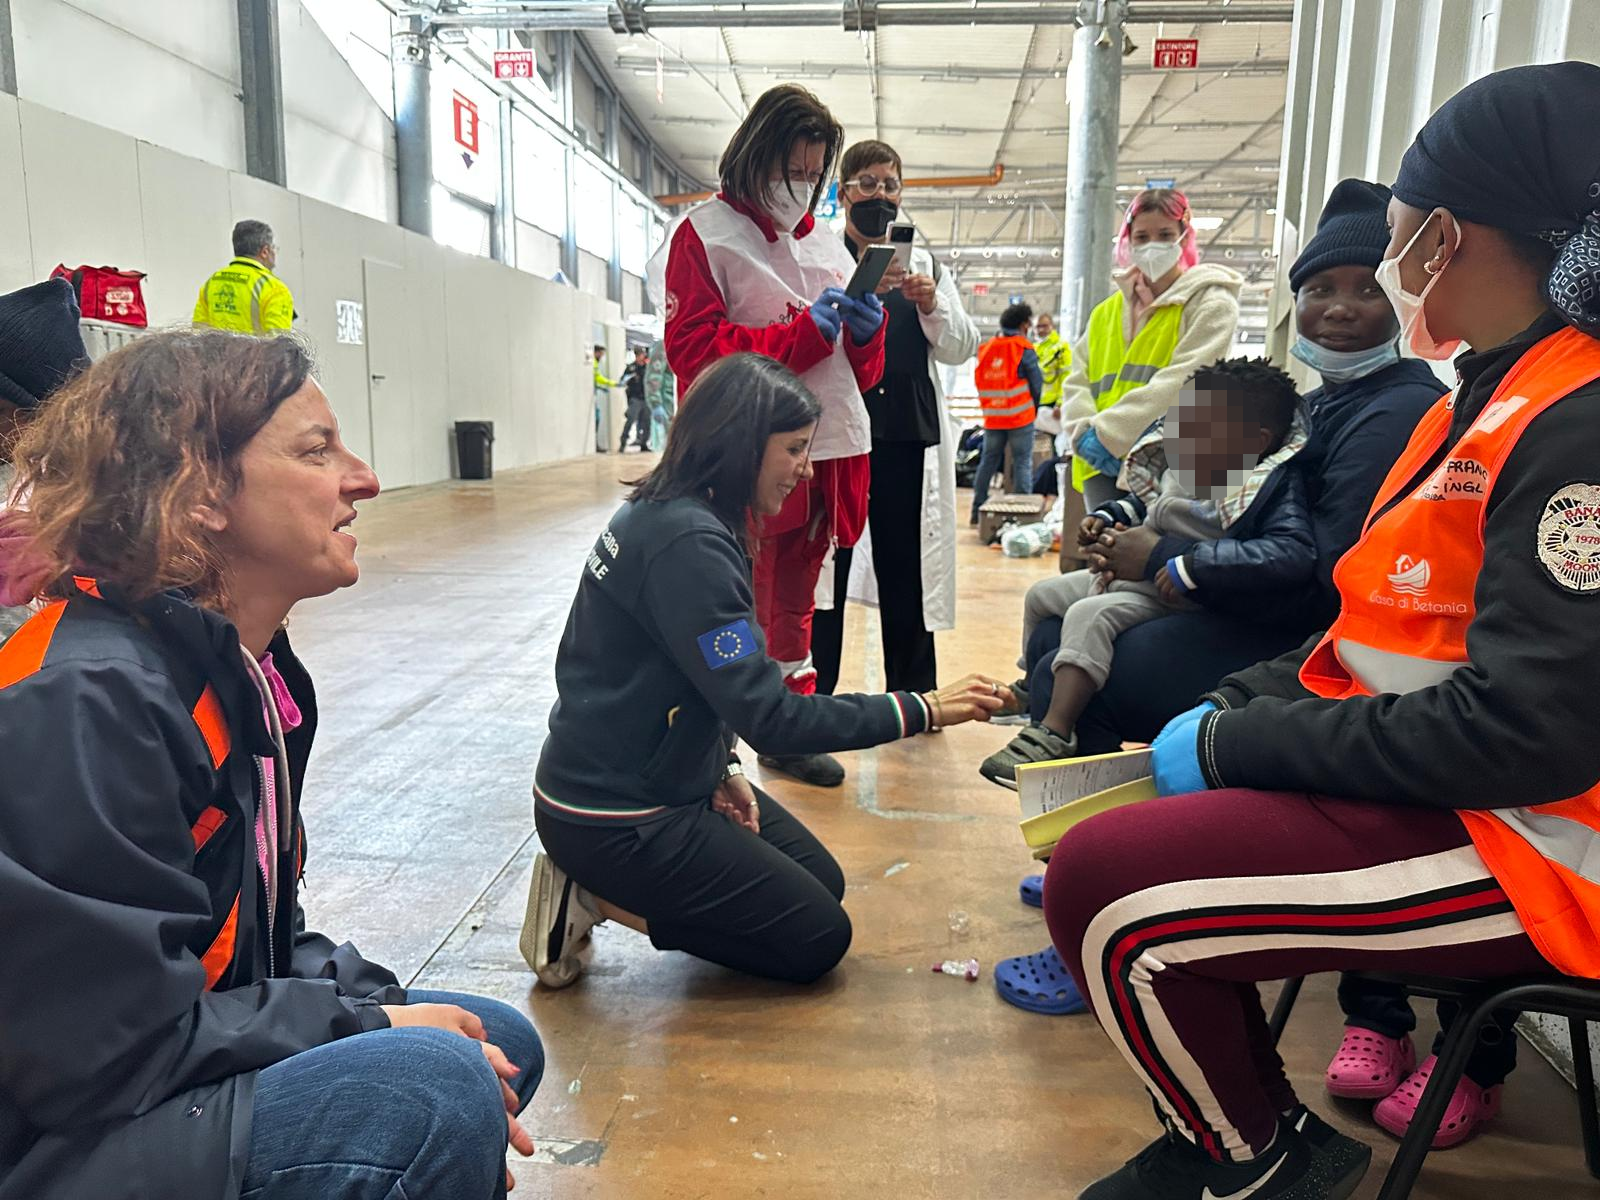 Immagine Life Support a Marina di Carrara, Monni e Spinelli: “L’immigrazione non è un’emergenza”